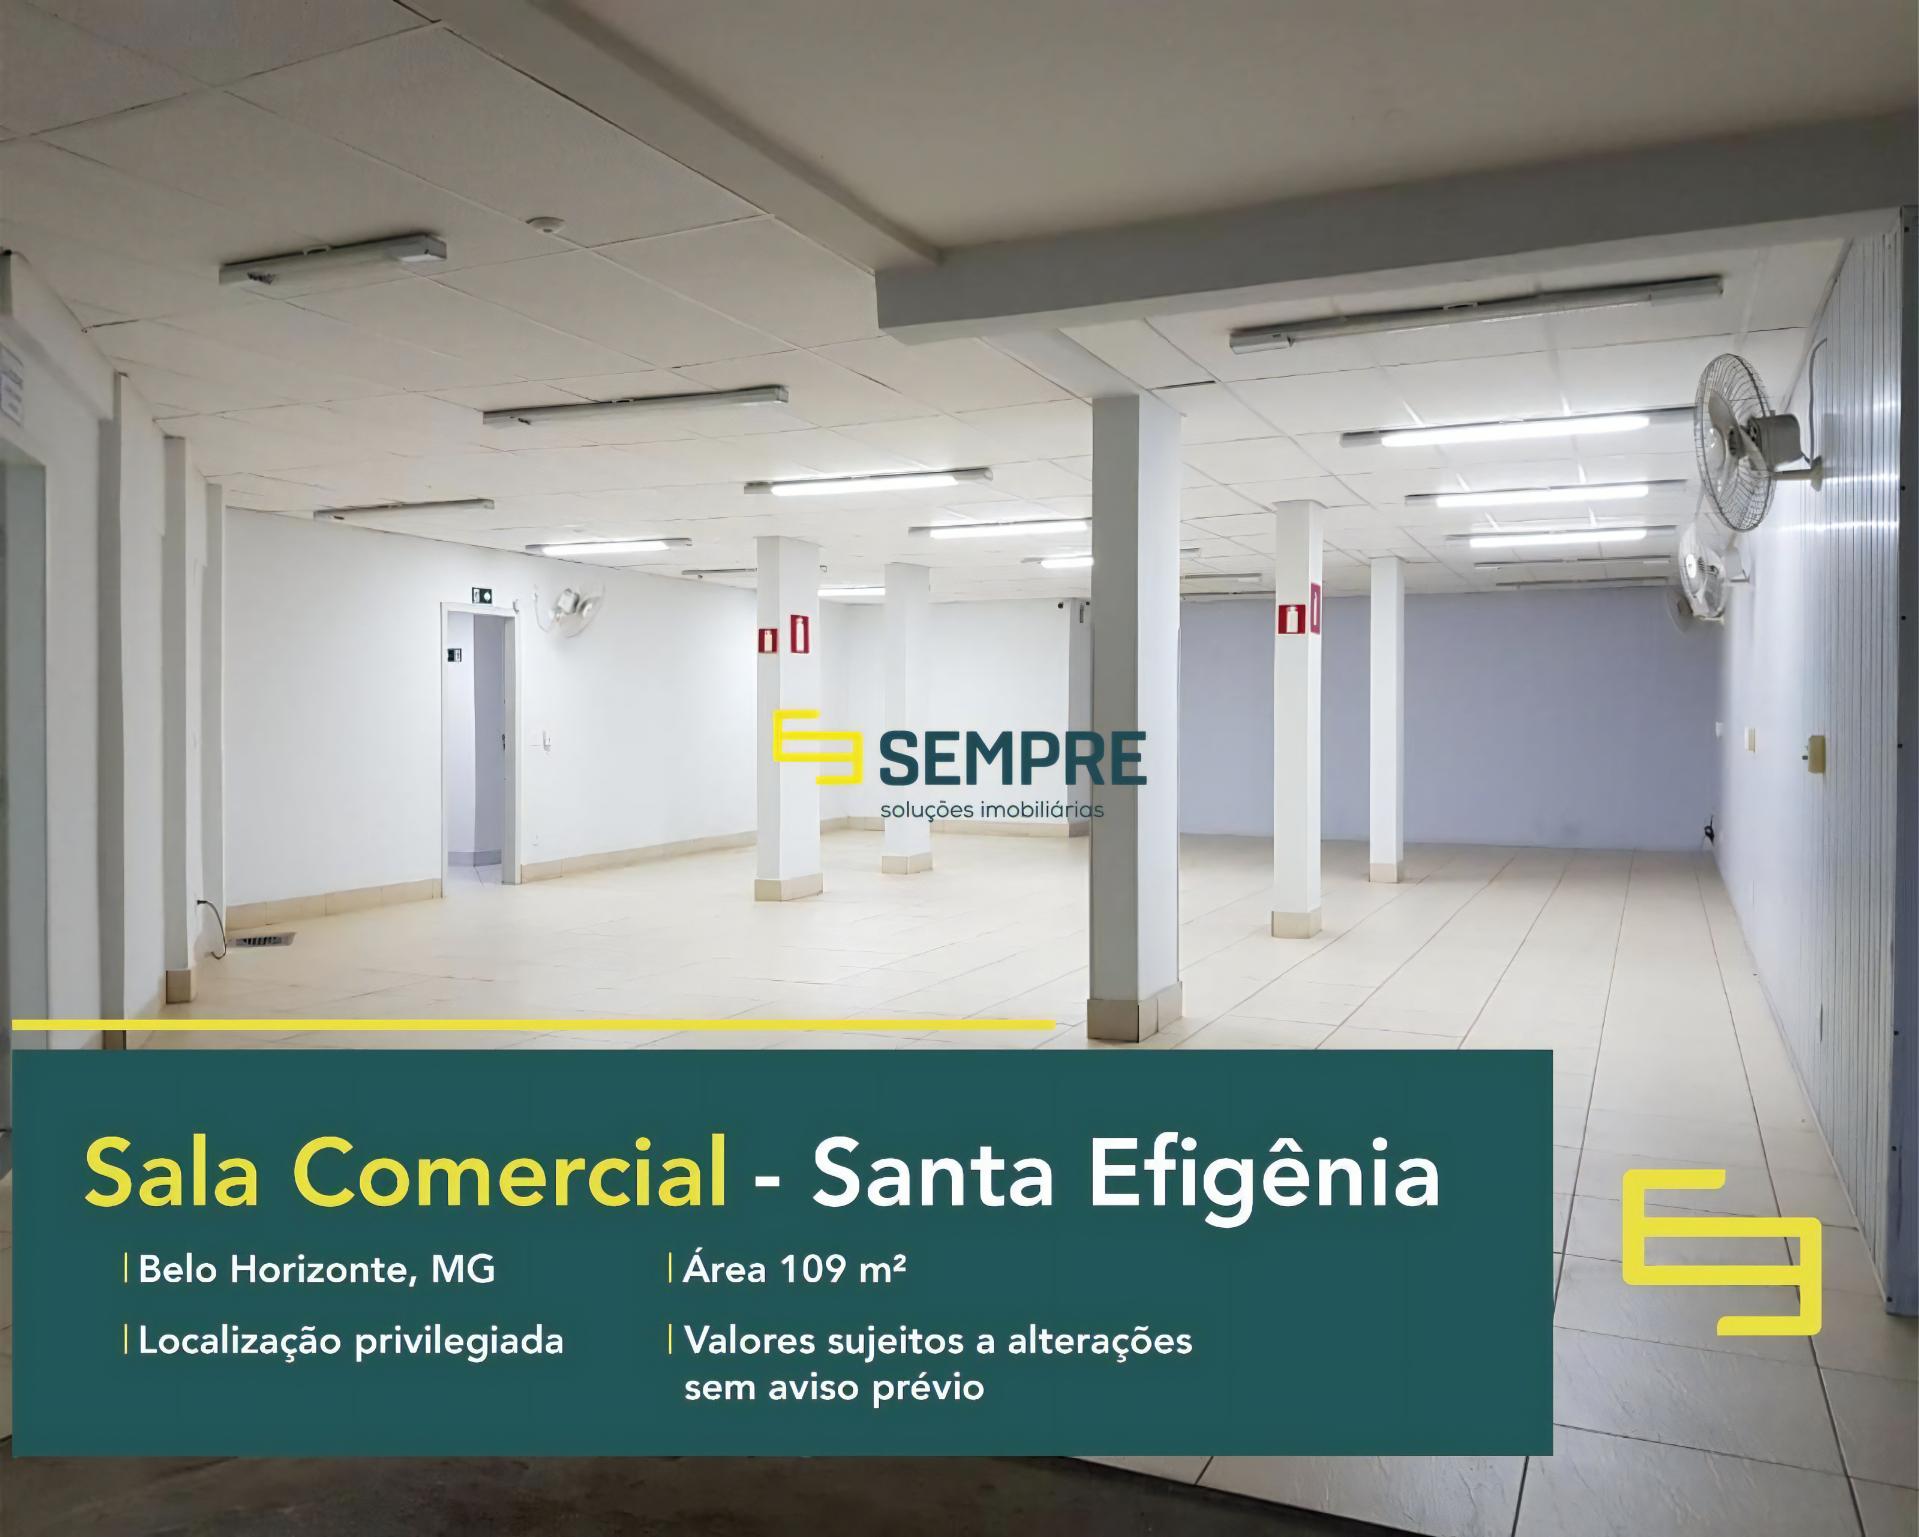 Venda de sala comercial em BH - Santa Efigênia, em excelente localização. O estabelecimento comercial conta, sobretudo, com área de 109 m².